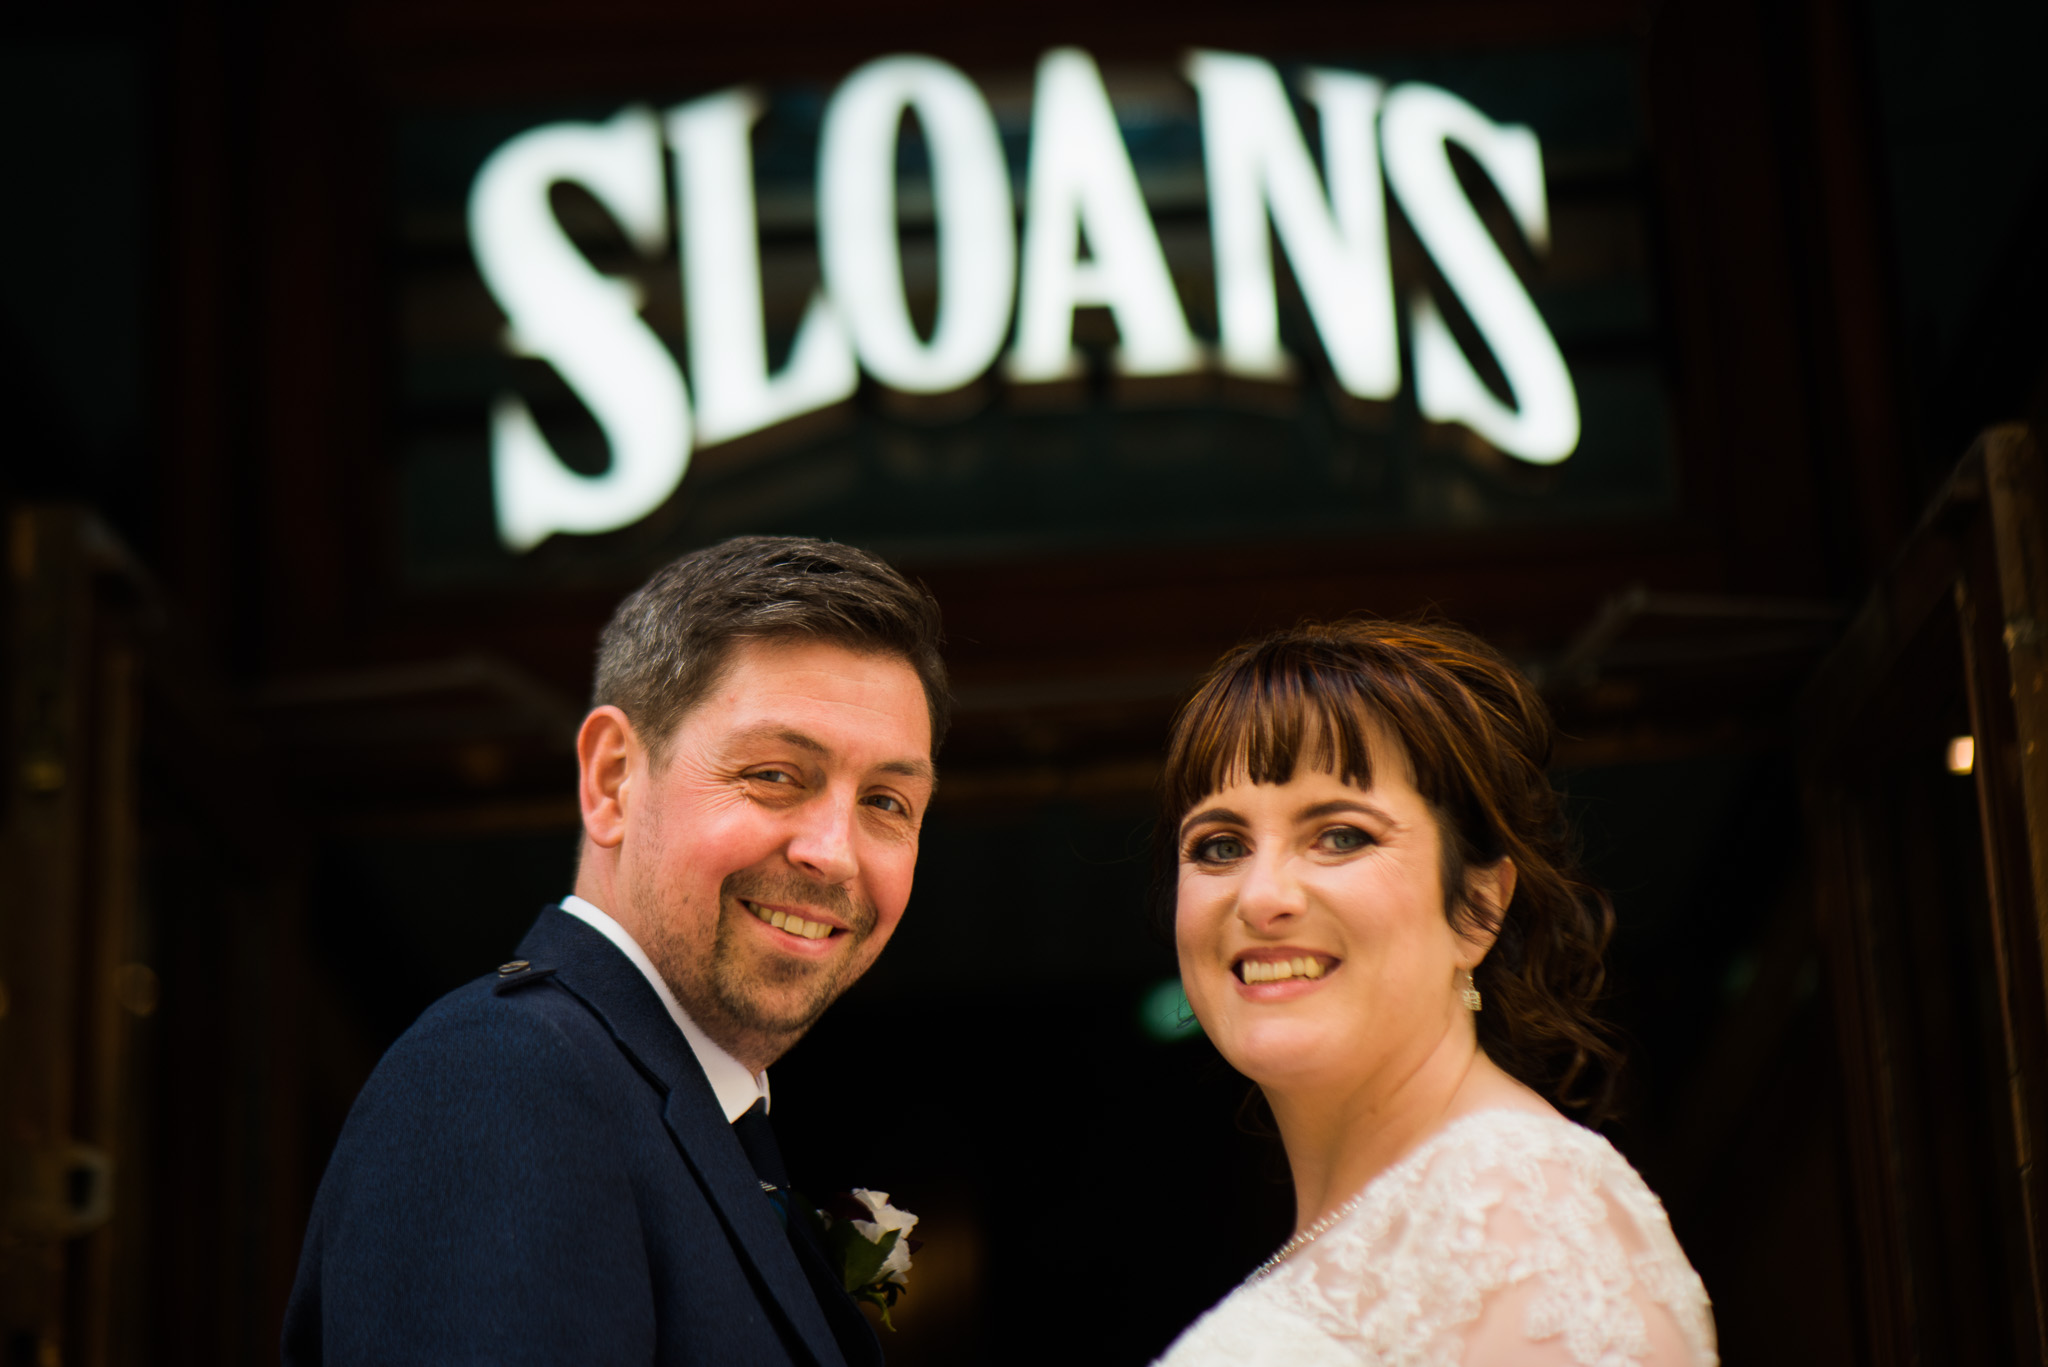 Sloans Wedding